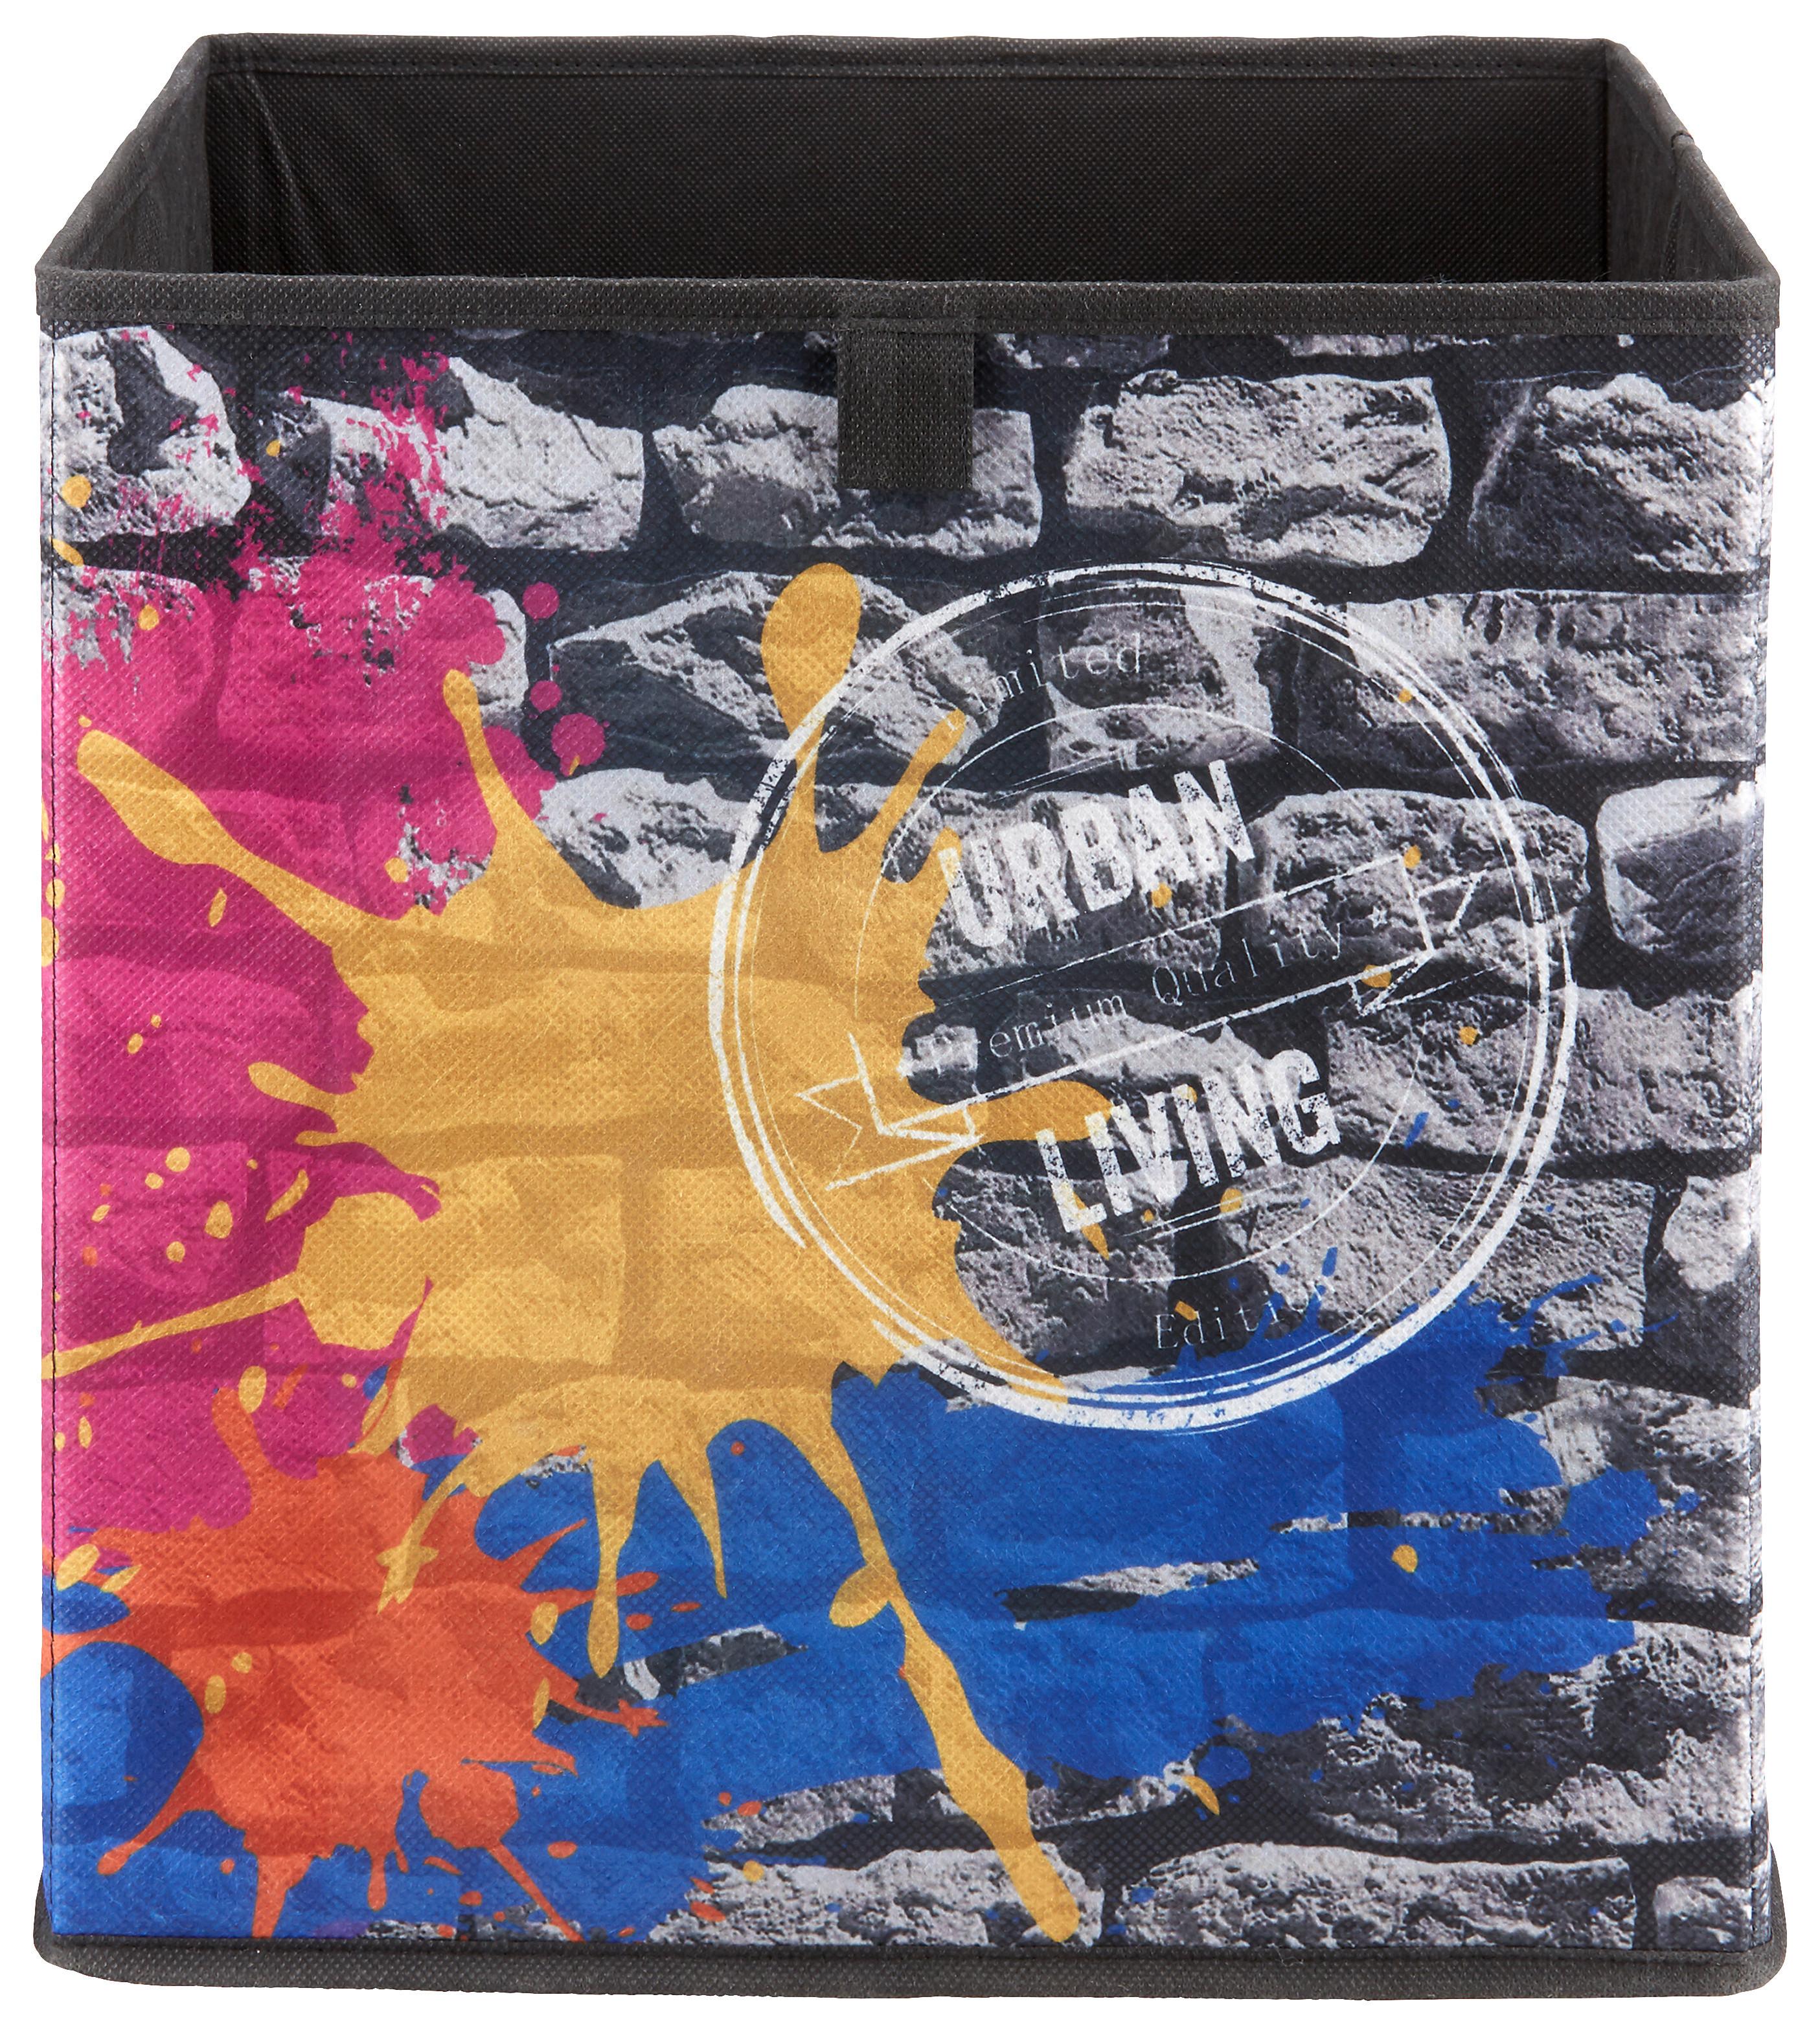 Aufbewahrungsbox Poppi mit Steindesign - Multicolor, MODERN, Karton/Textil (32/32/32cm) - Based